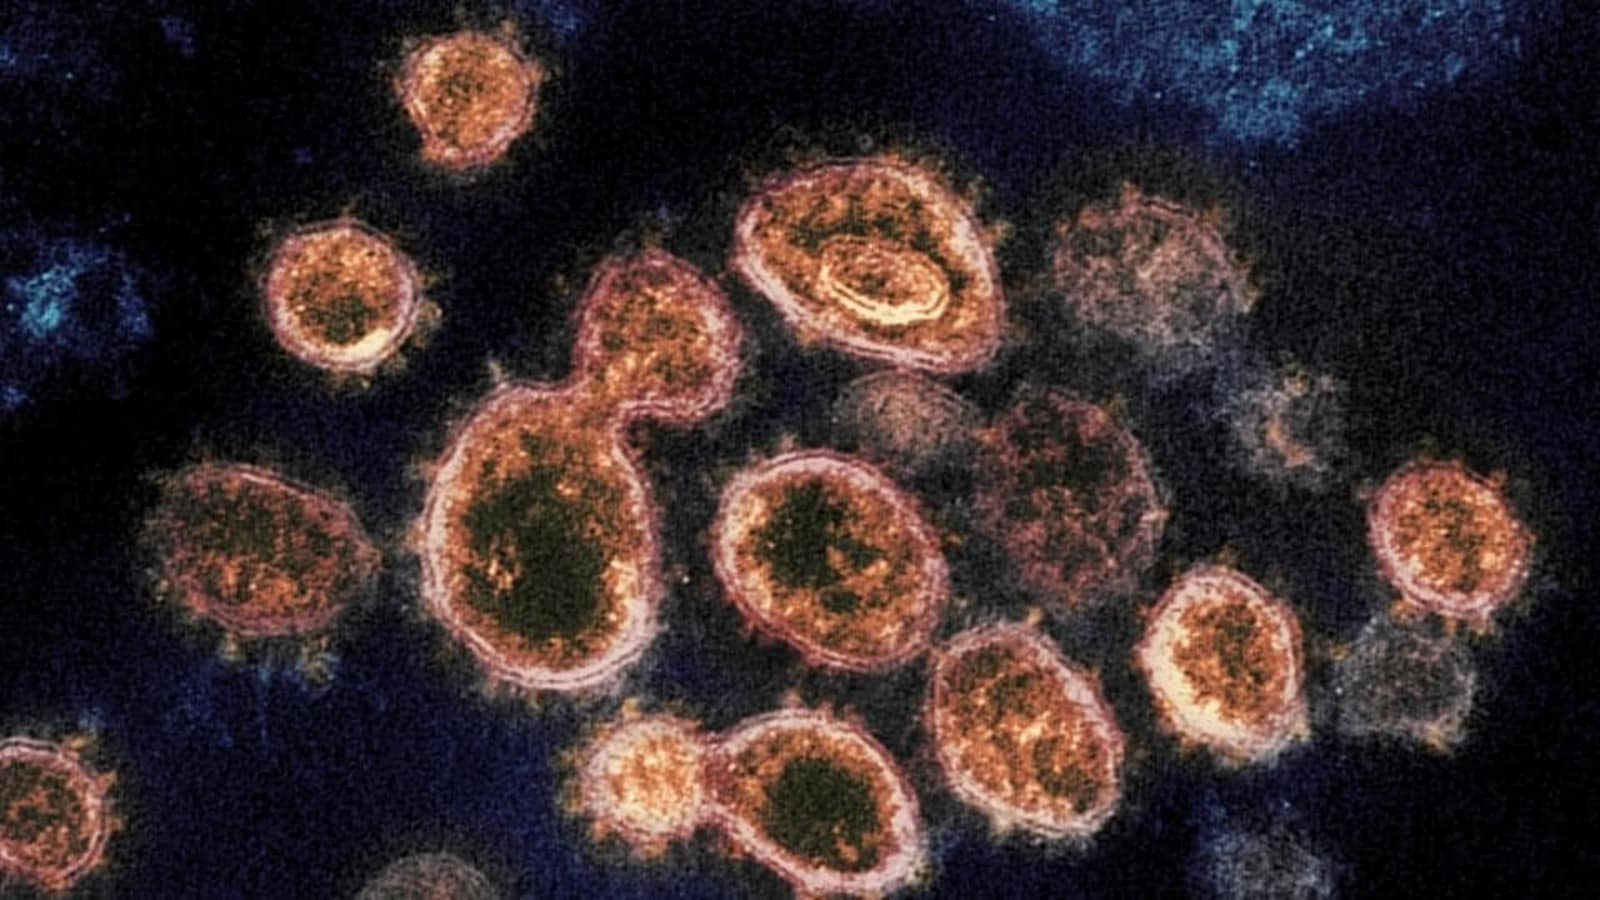 Coronavirus epidemics 1st hit over 21,000 years ago: Study